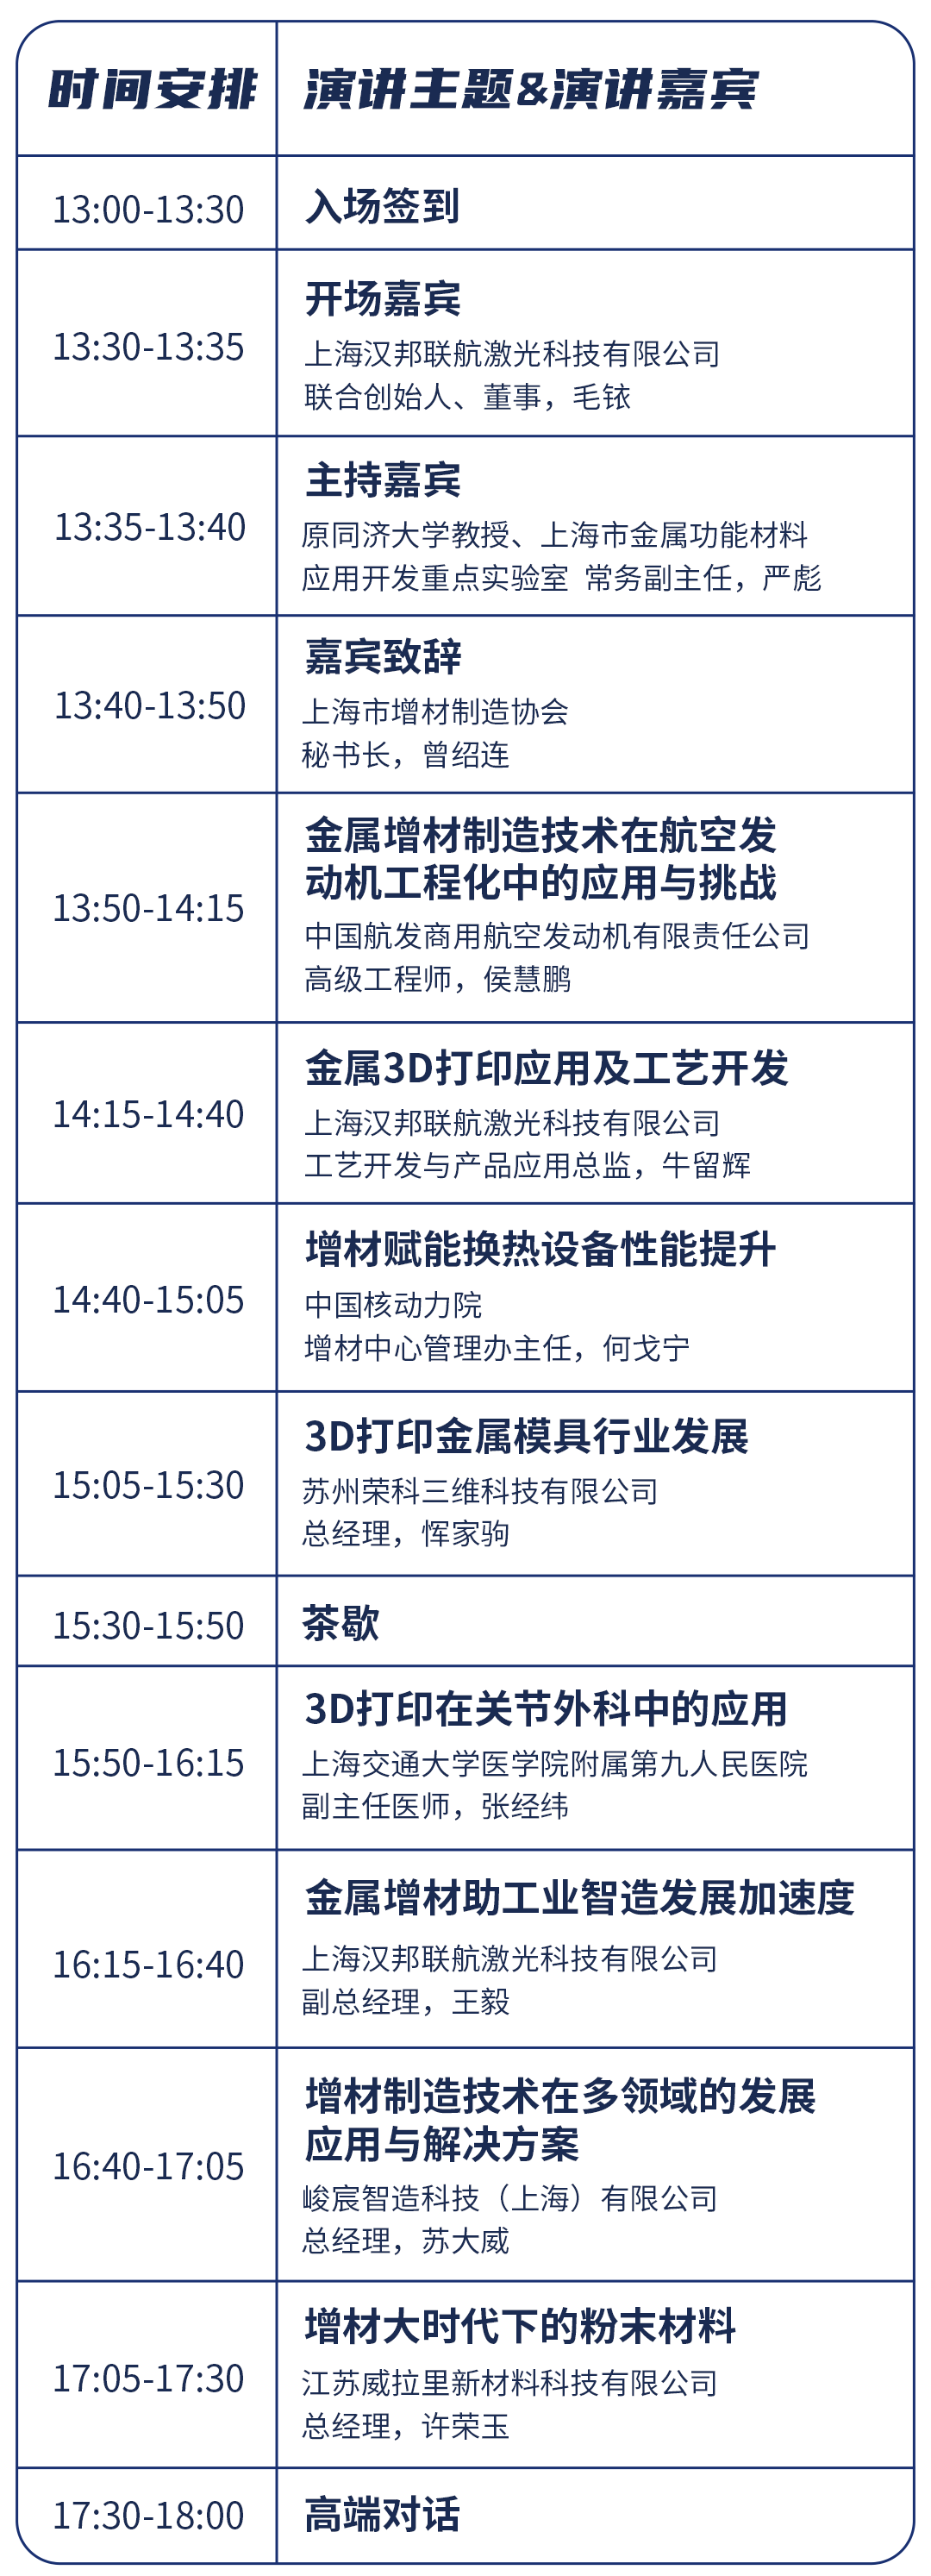 会议邀请丨“聚力向新，智造加速度”金属增材技术研讨会将在沪召开